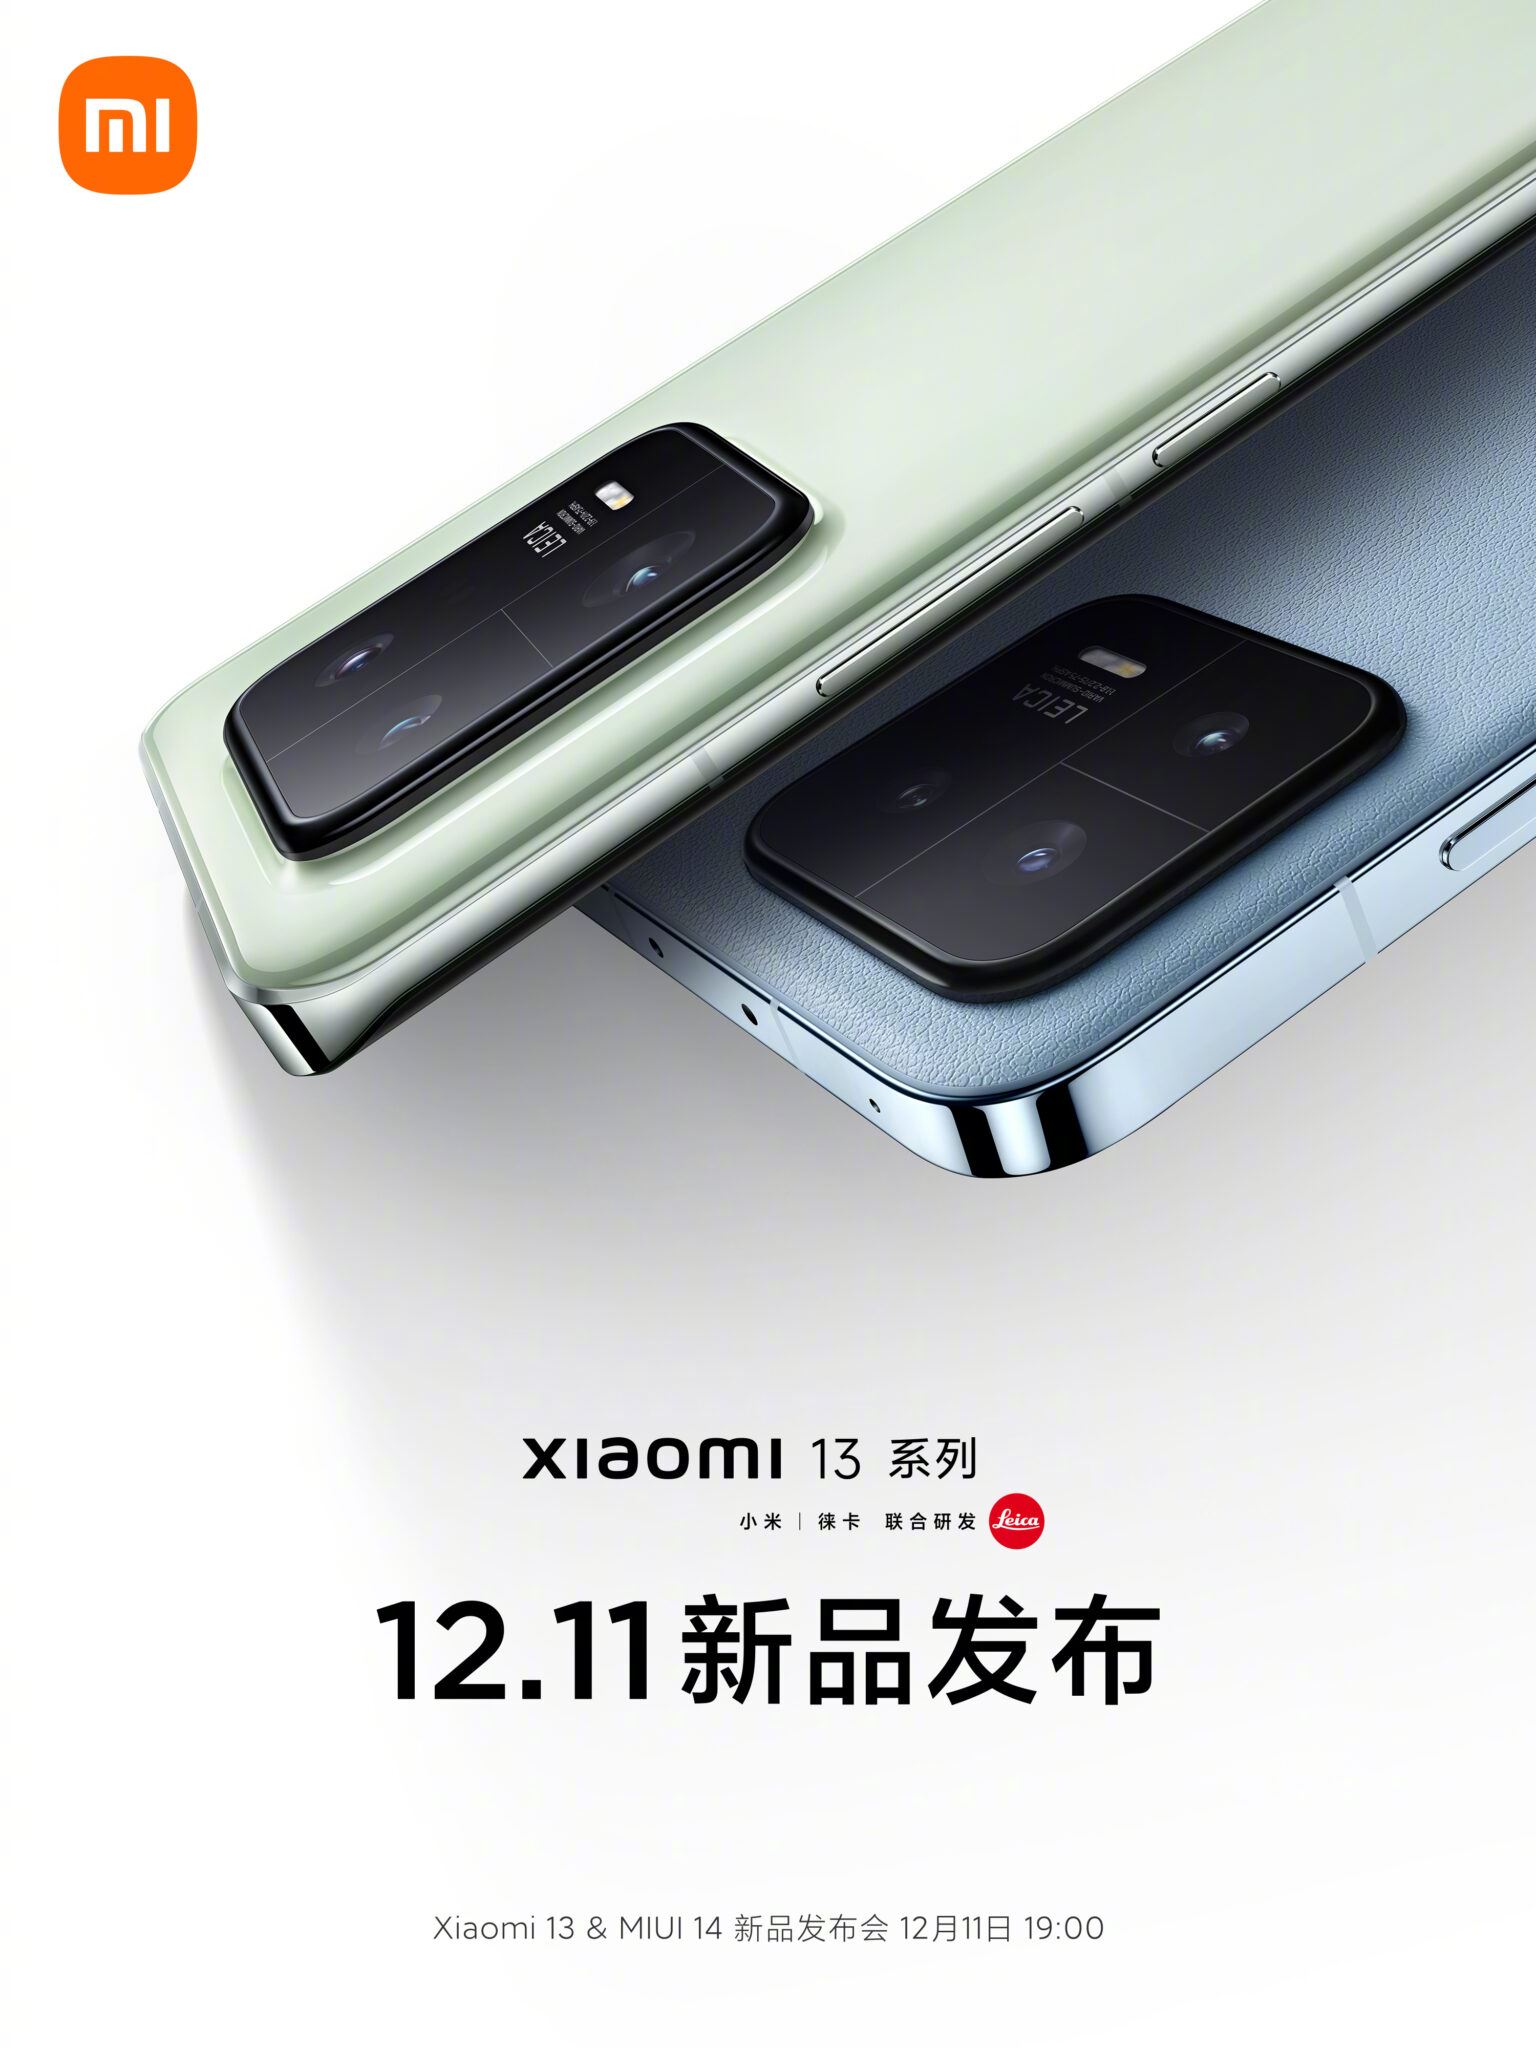 Peluncuran Xiaomi 13 Dijadwalkan Ulang pada 11 Desember